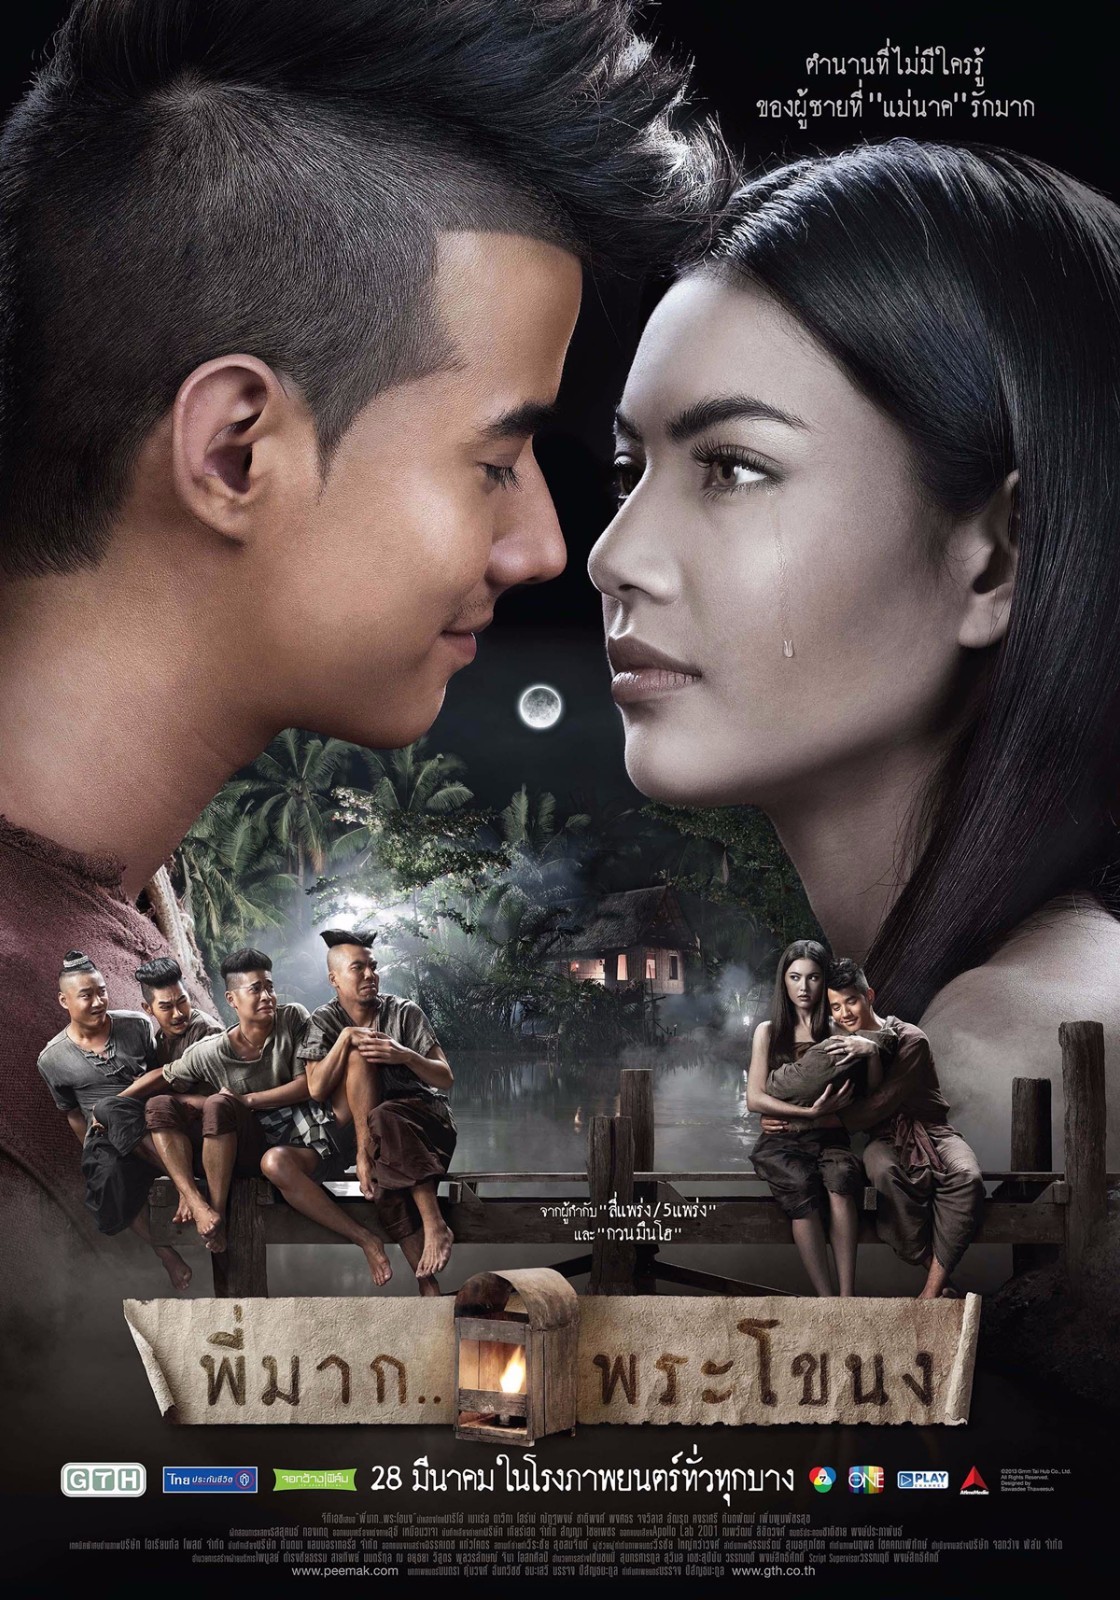 当你遇上泰国电影这是一场暹罗之恋